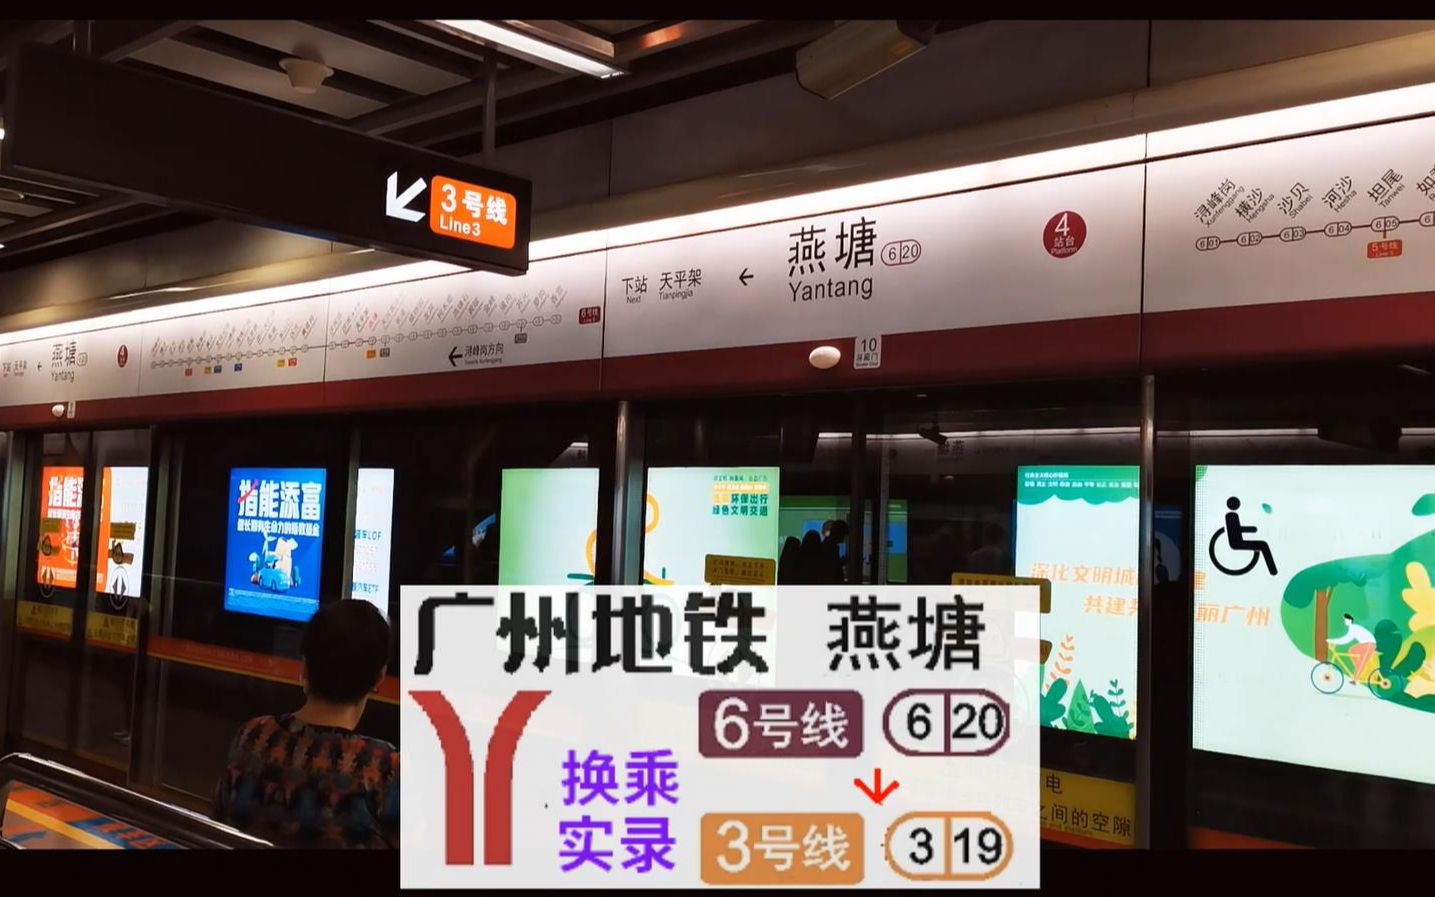 【广州地铁换乘】燕塘6号线换乘3号线